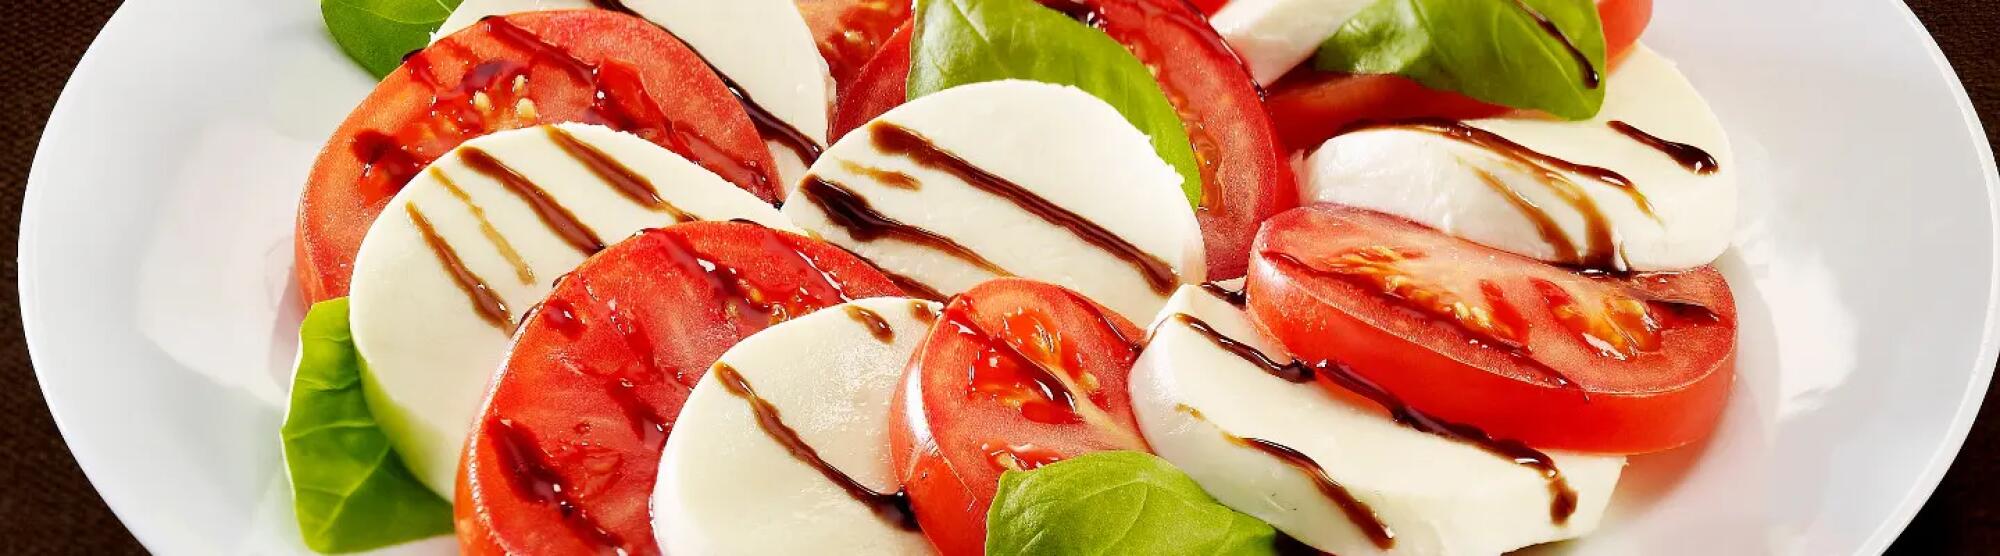 LA02_salade-caprese-tomate-mozzarella